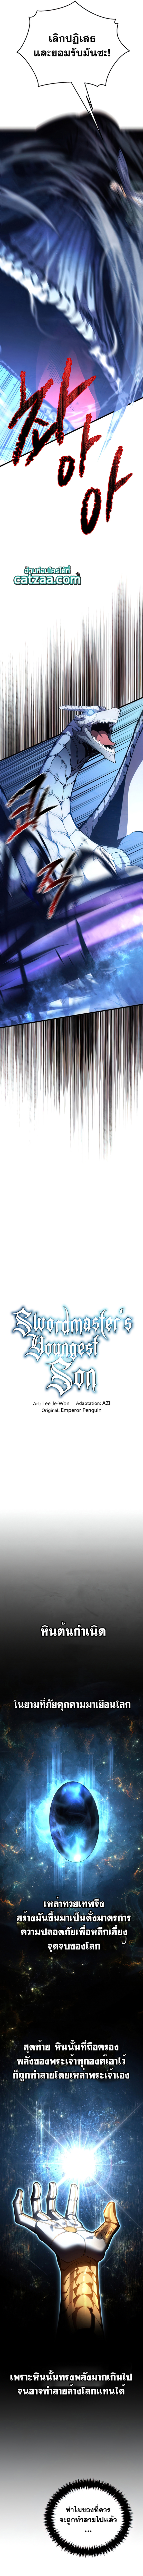 Swordmaster’s Youngest Son 54 (4)